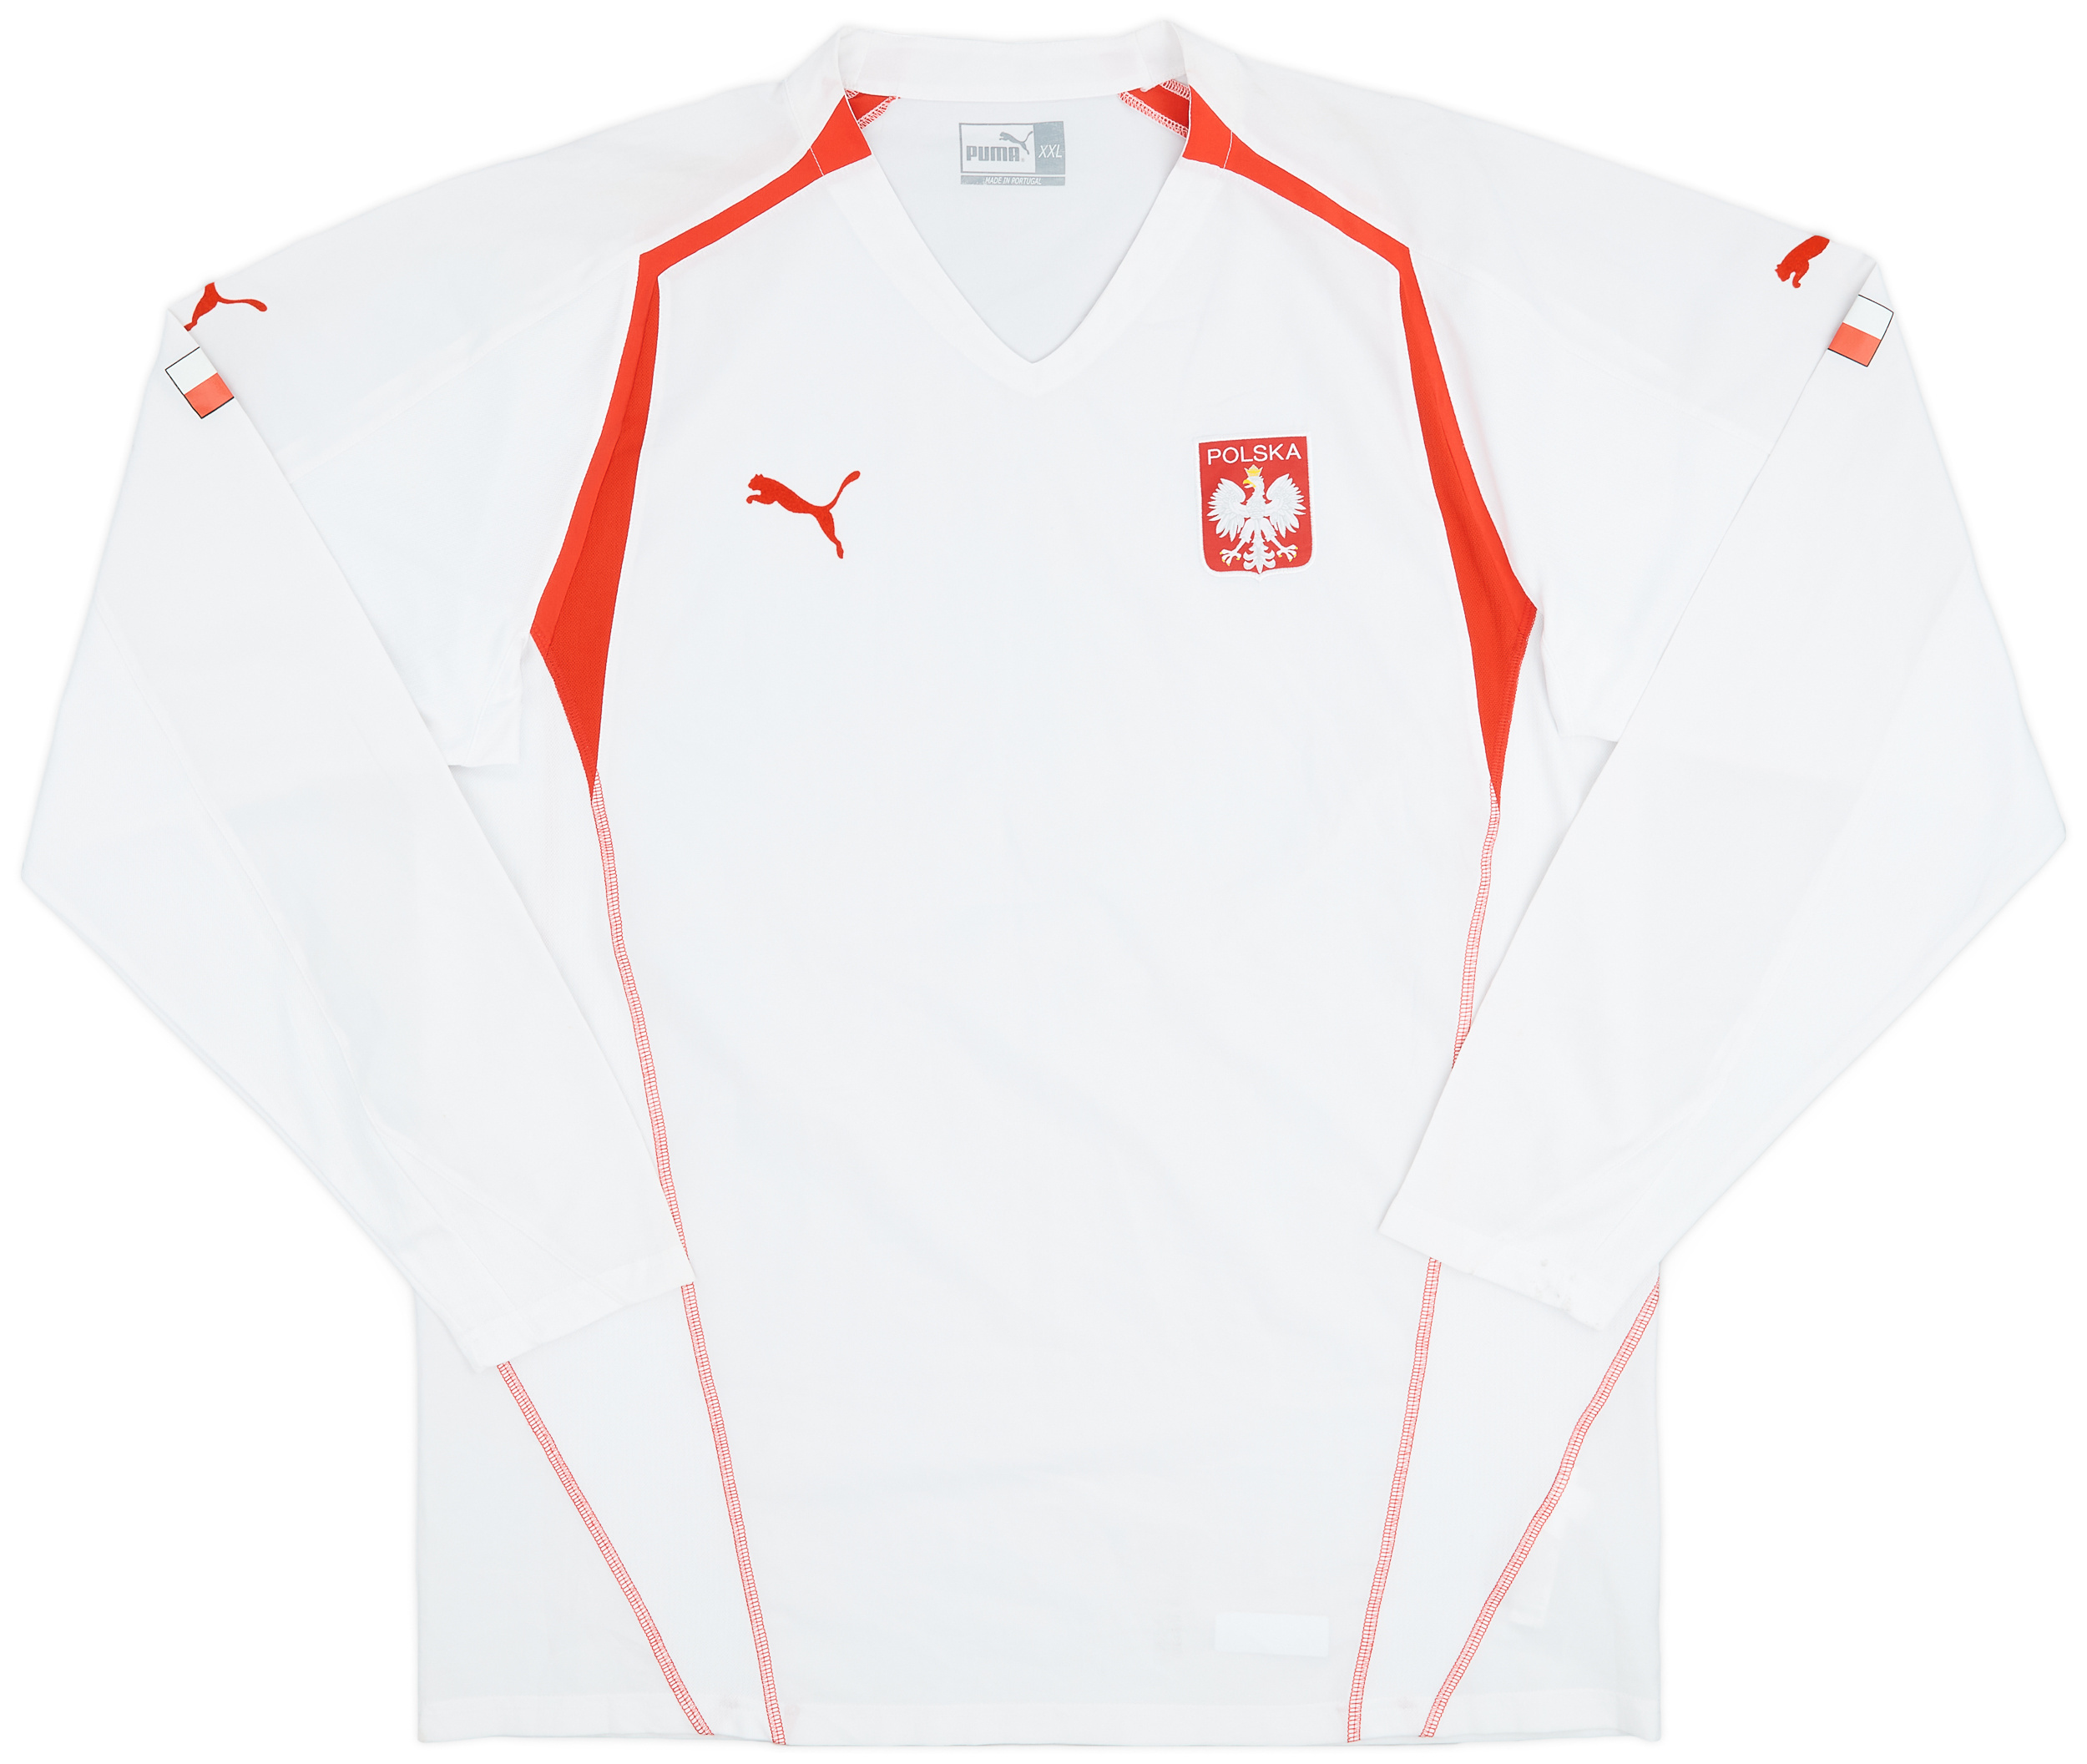 2004-06 Poland Home Shirt - 9/10 - ()